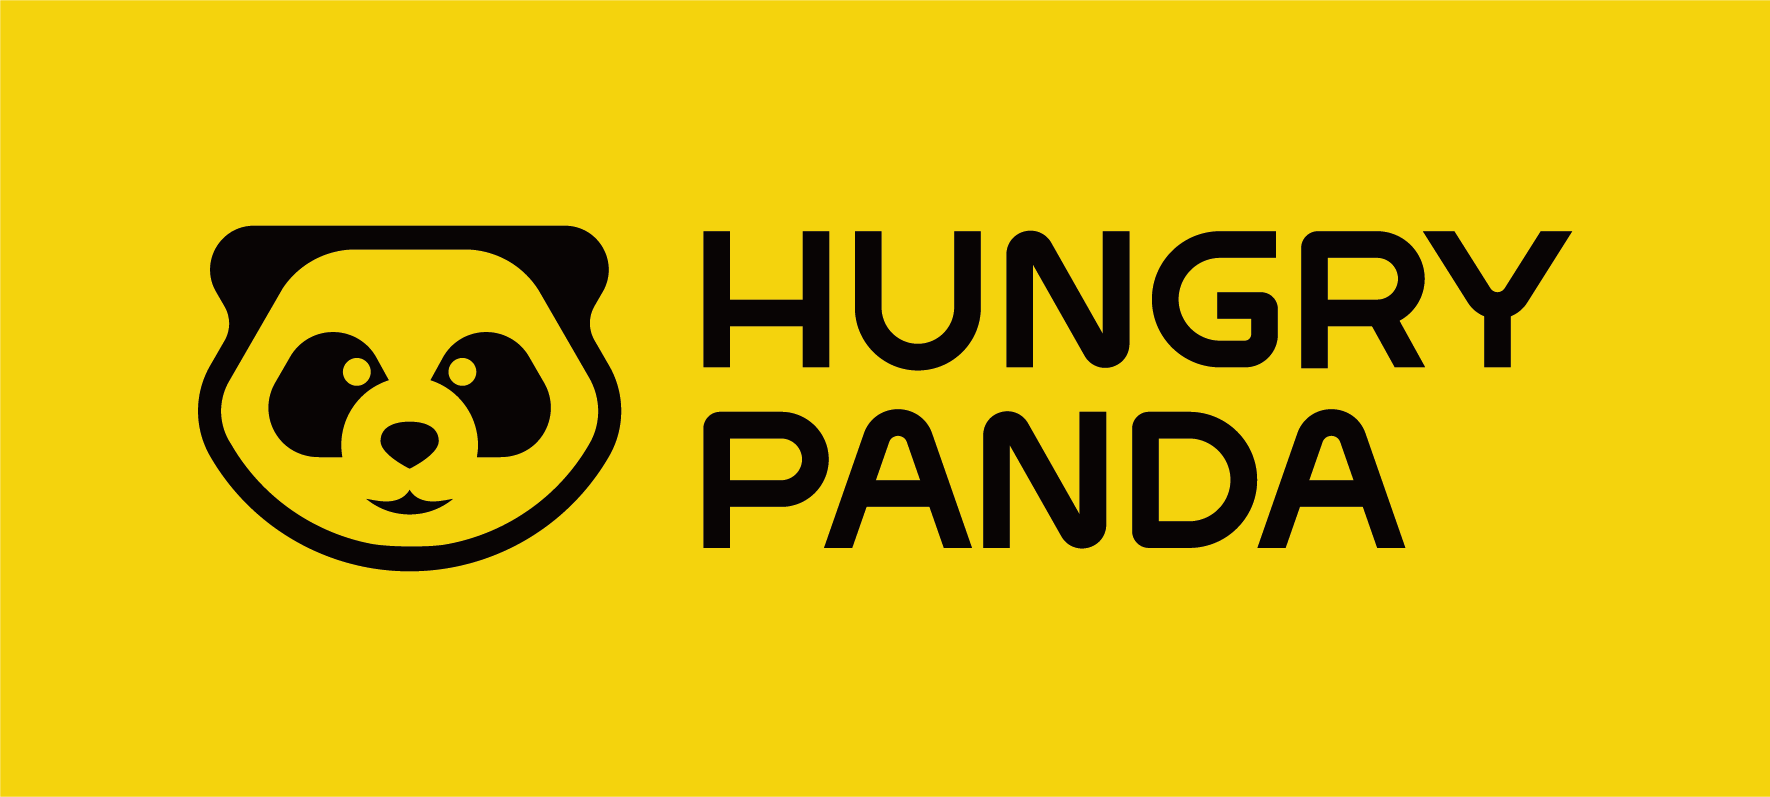 Hungry Panda logo